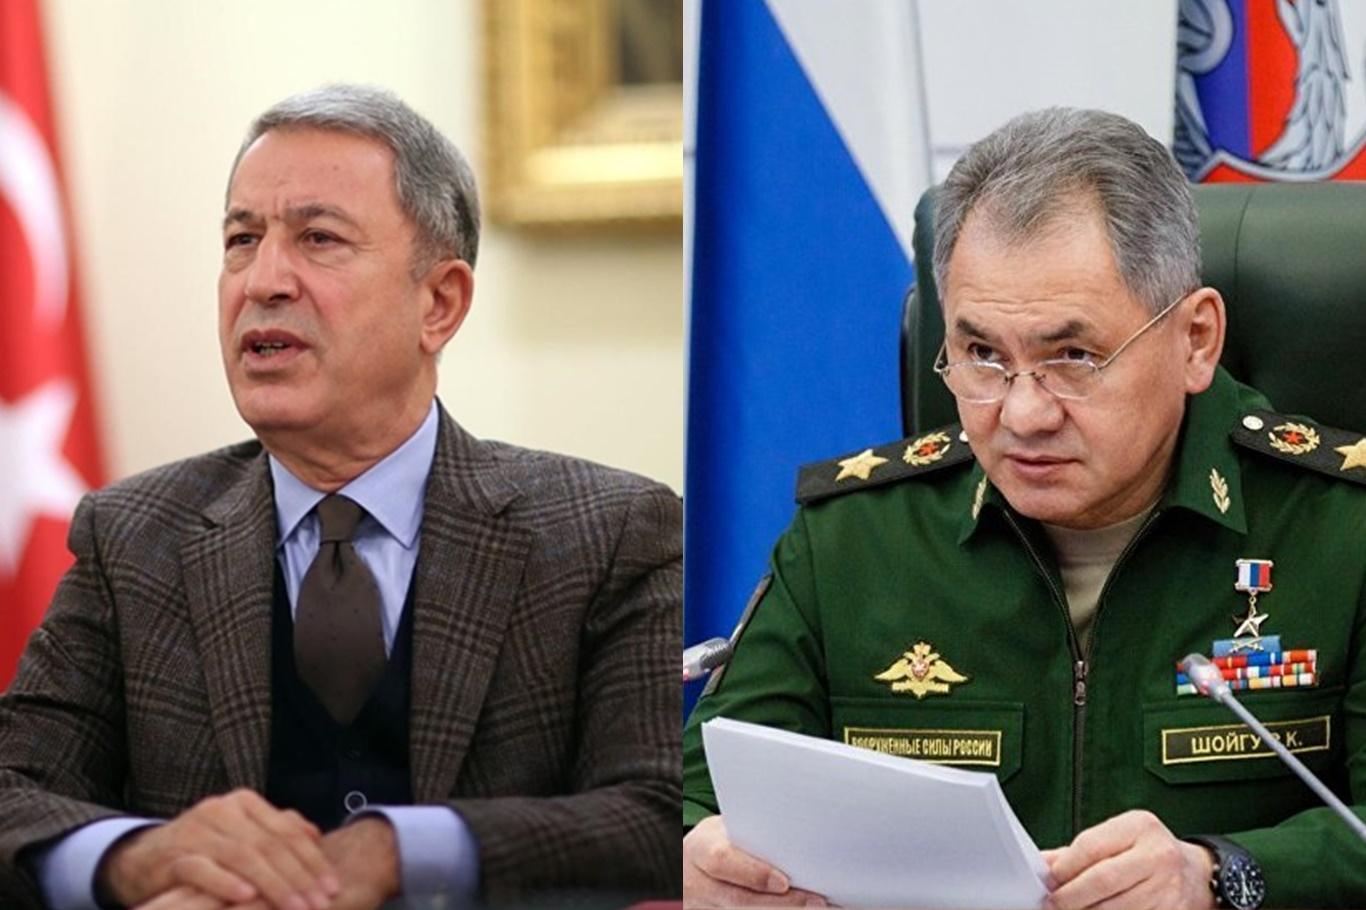 Millî Savunma Bakanı Akar, Rus mevkidaşıyla görüştü